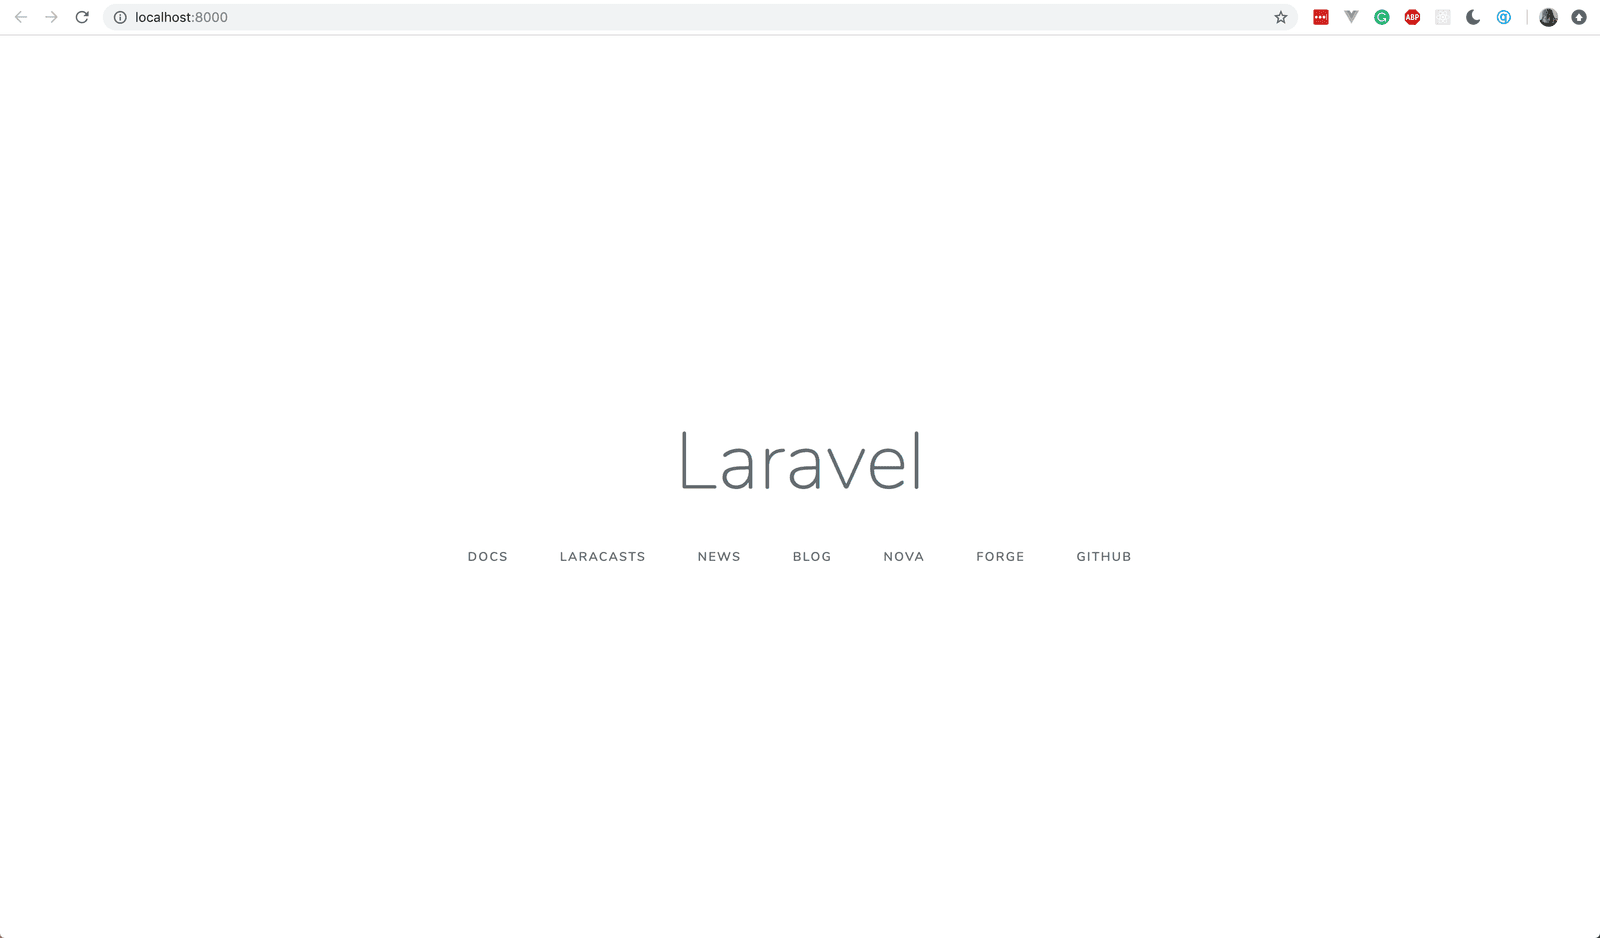 laravel-log-1-3